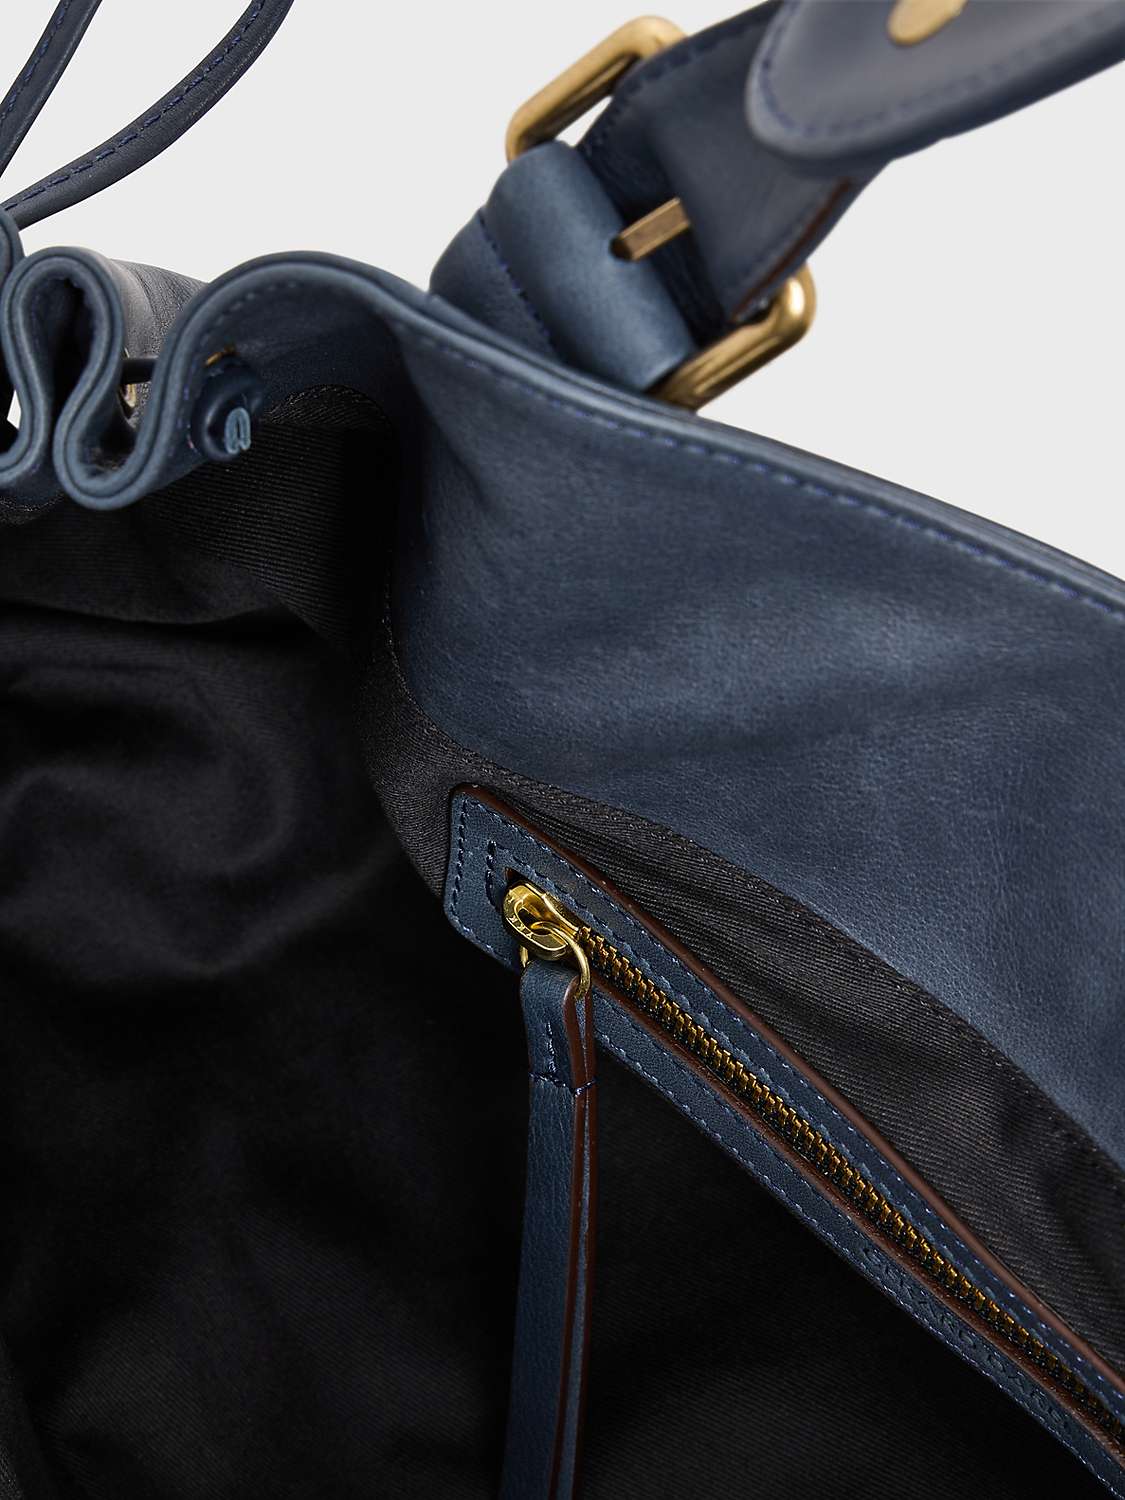 Buy Gerard Darel 24H Leather Shoulder Bag, Navy Online at johnlewis.com